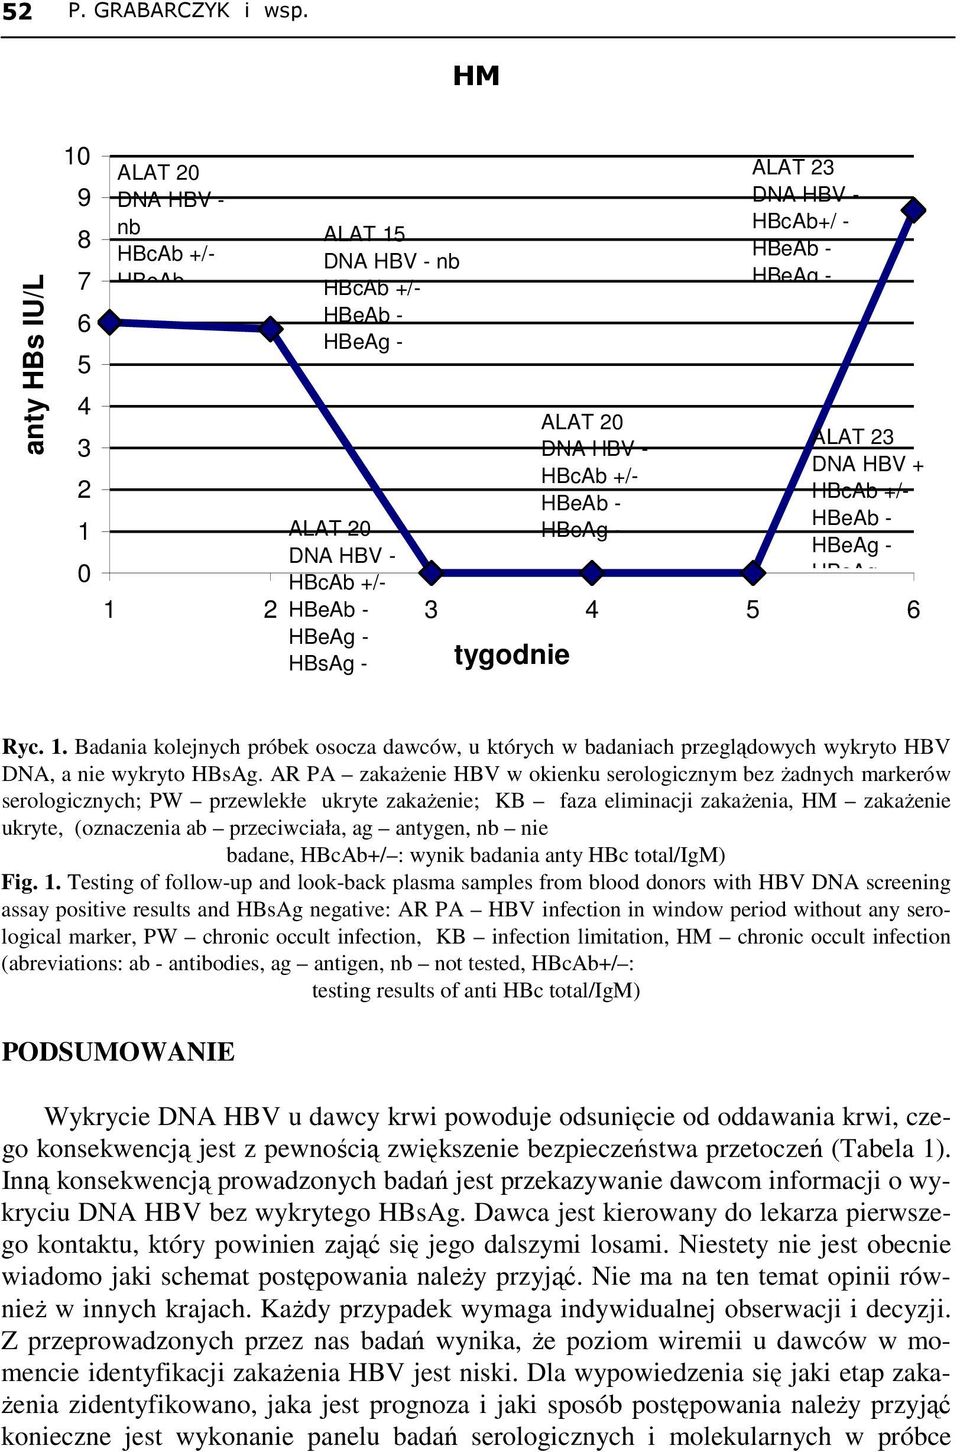 HBcAb+/ - ALAT 23 DNA HBV + HBcAb +/- Ryc. 1. Badania kolejnych próbek osocza dawców, u których w badaniach przeglądowych wykryto HBV DNA, a nie wykryto HBsAg.